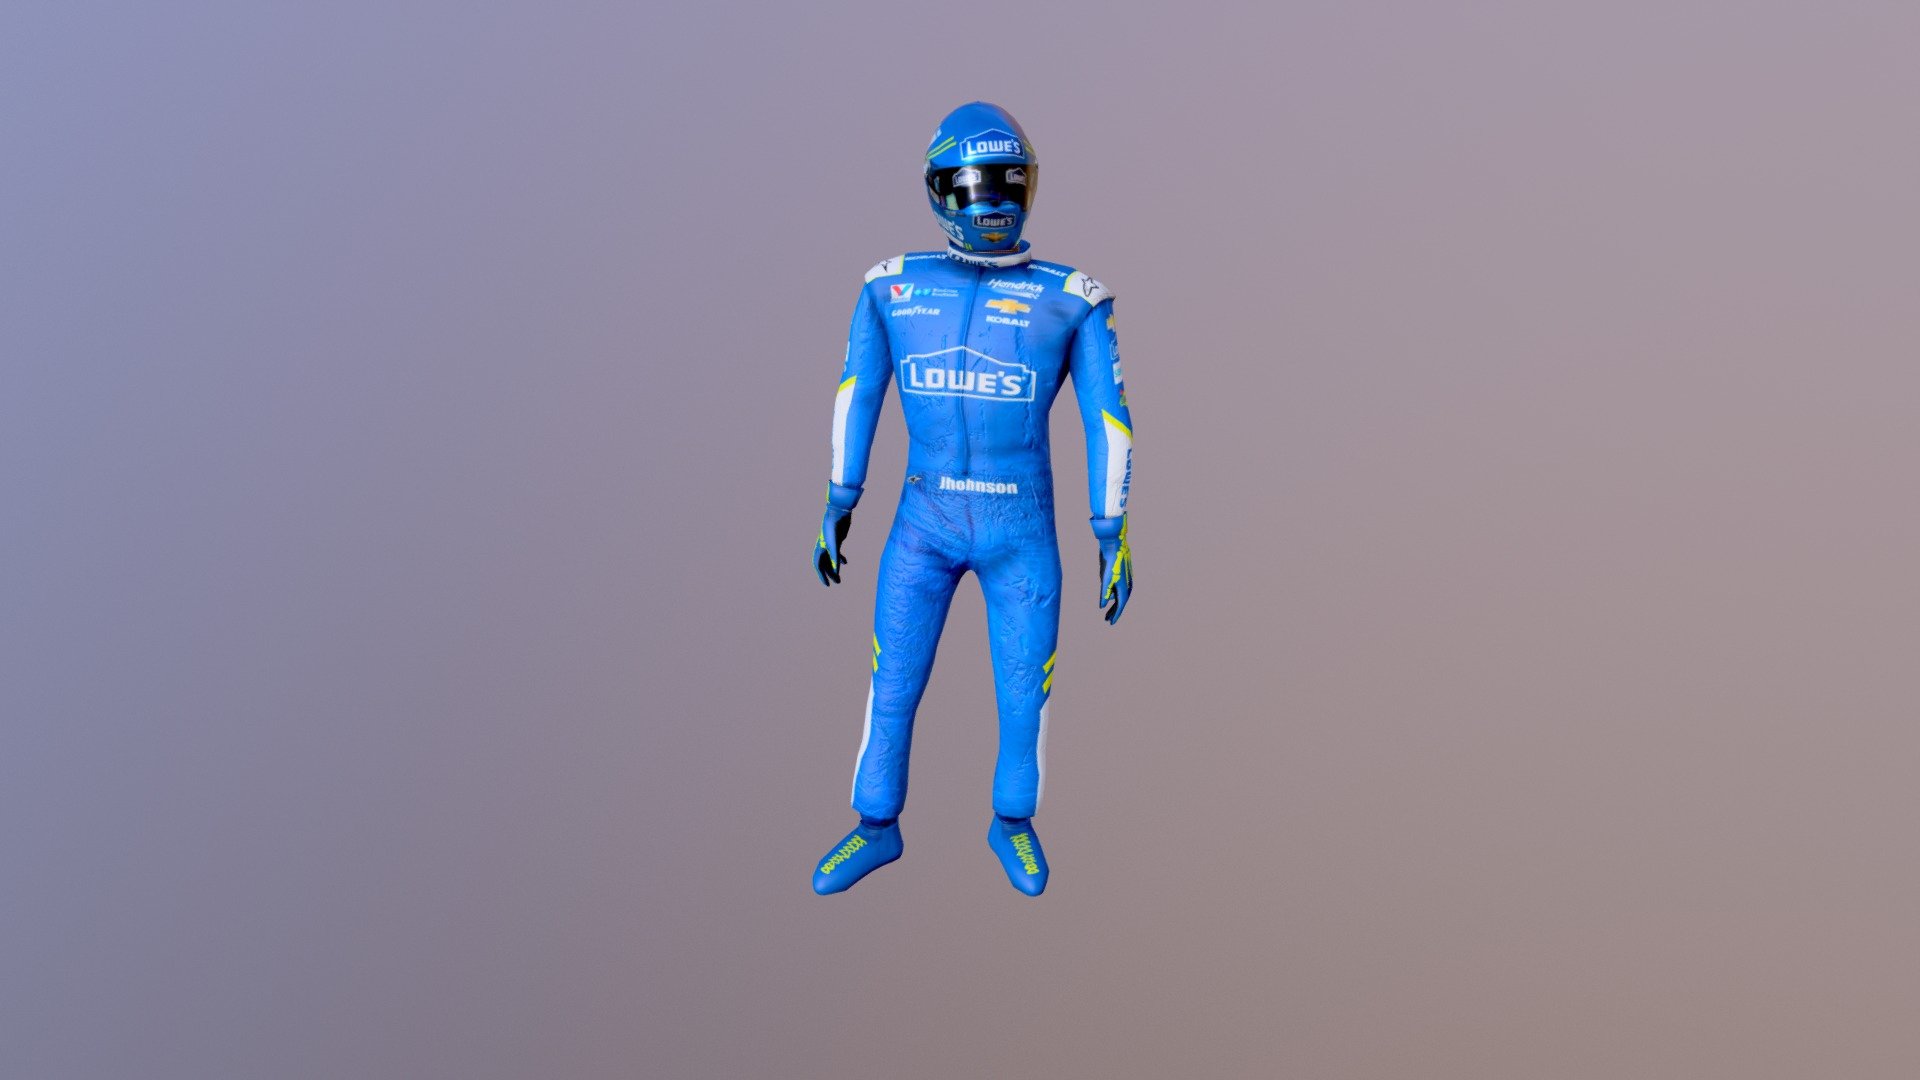 Helmet Jimmie Johnsone NASCAR 2017 season - Jimmie Johnson - 3D model by SweetKaos 3d model